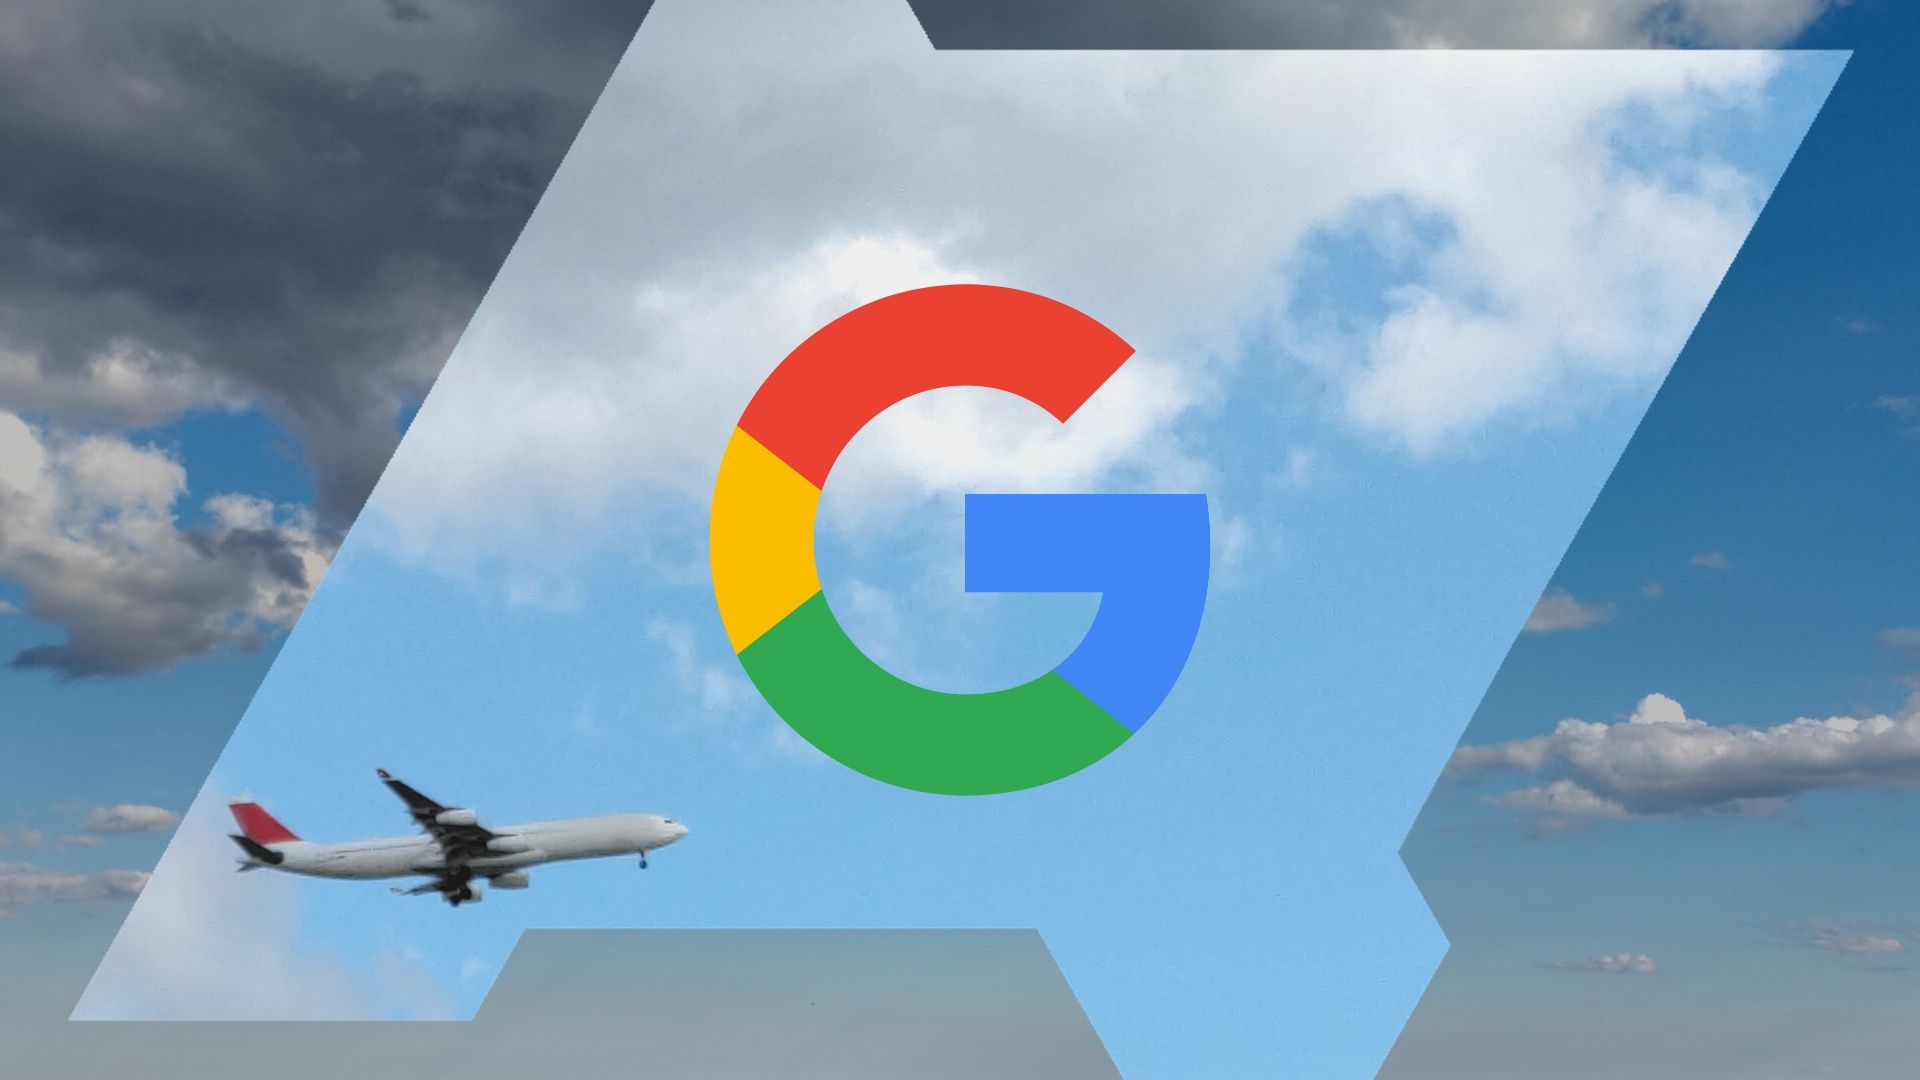 Logotipo do Google sobreposto em um céu azul com um avião voando dentro de uma moldura do logotipo do Android Police